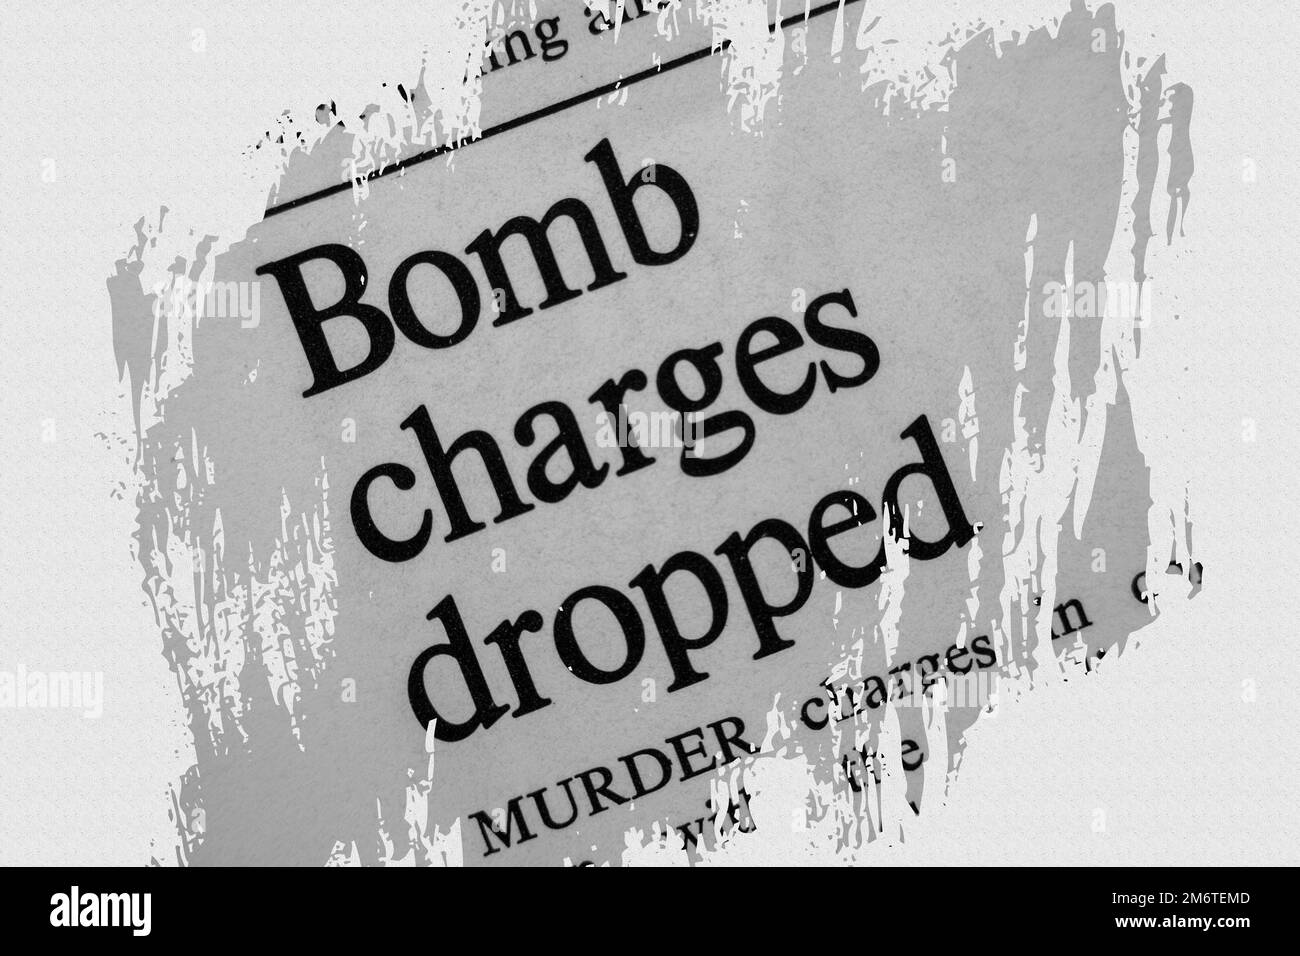 Bomba accuse caduto - notizie dal titolo dell'articolo del giornale 1975 con overlay Foto Stock